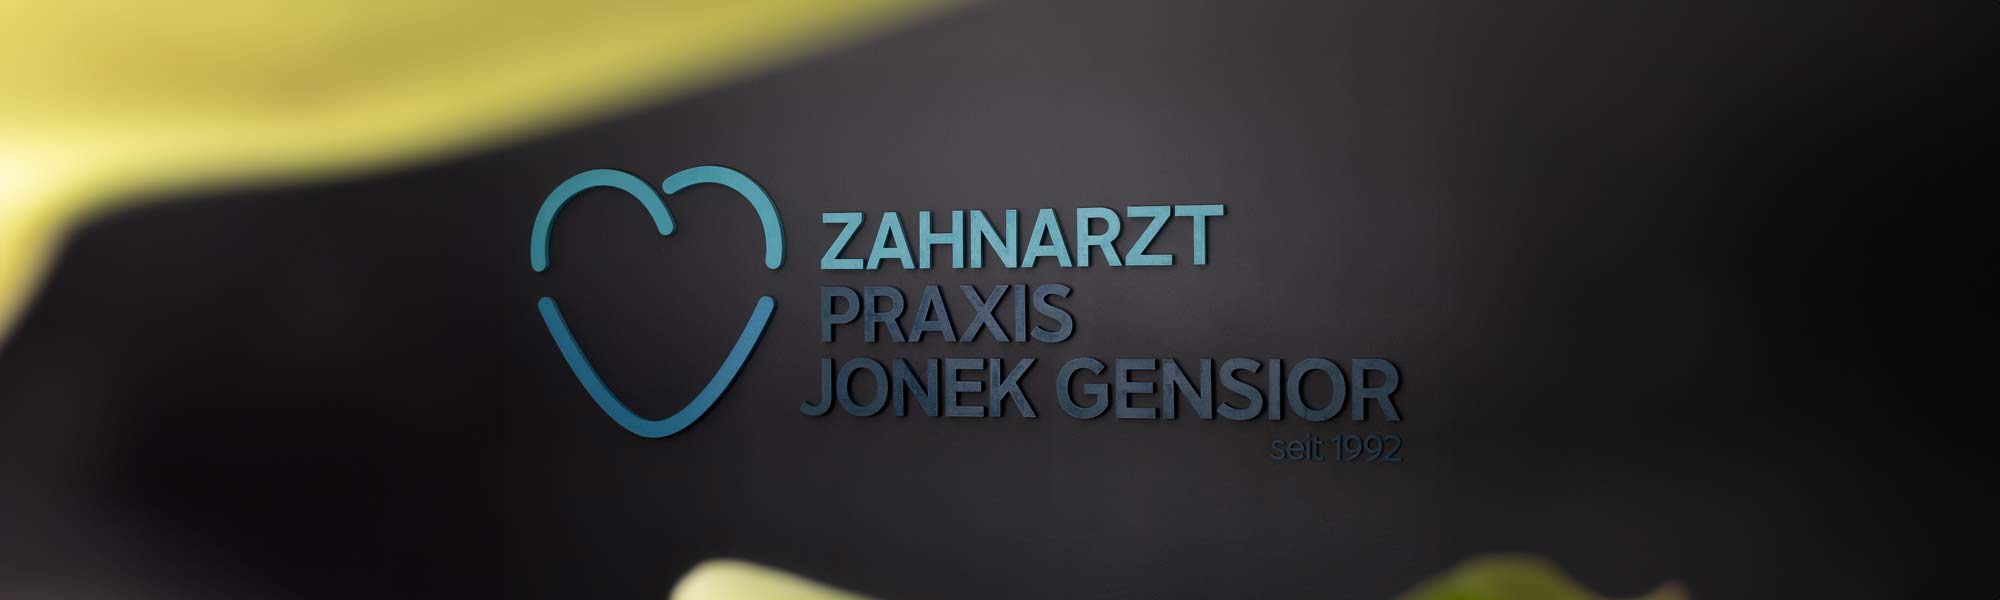 Zahnarzt Neuss Holzheim - Jonek / Gensior - Kontakt